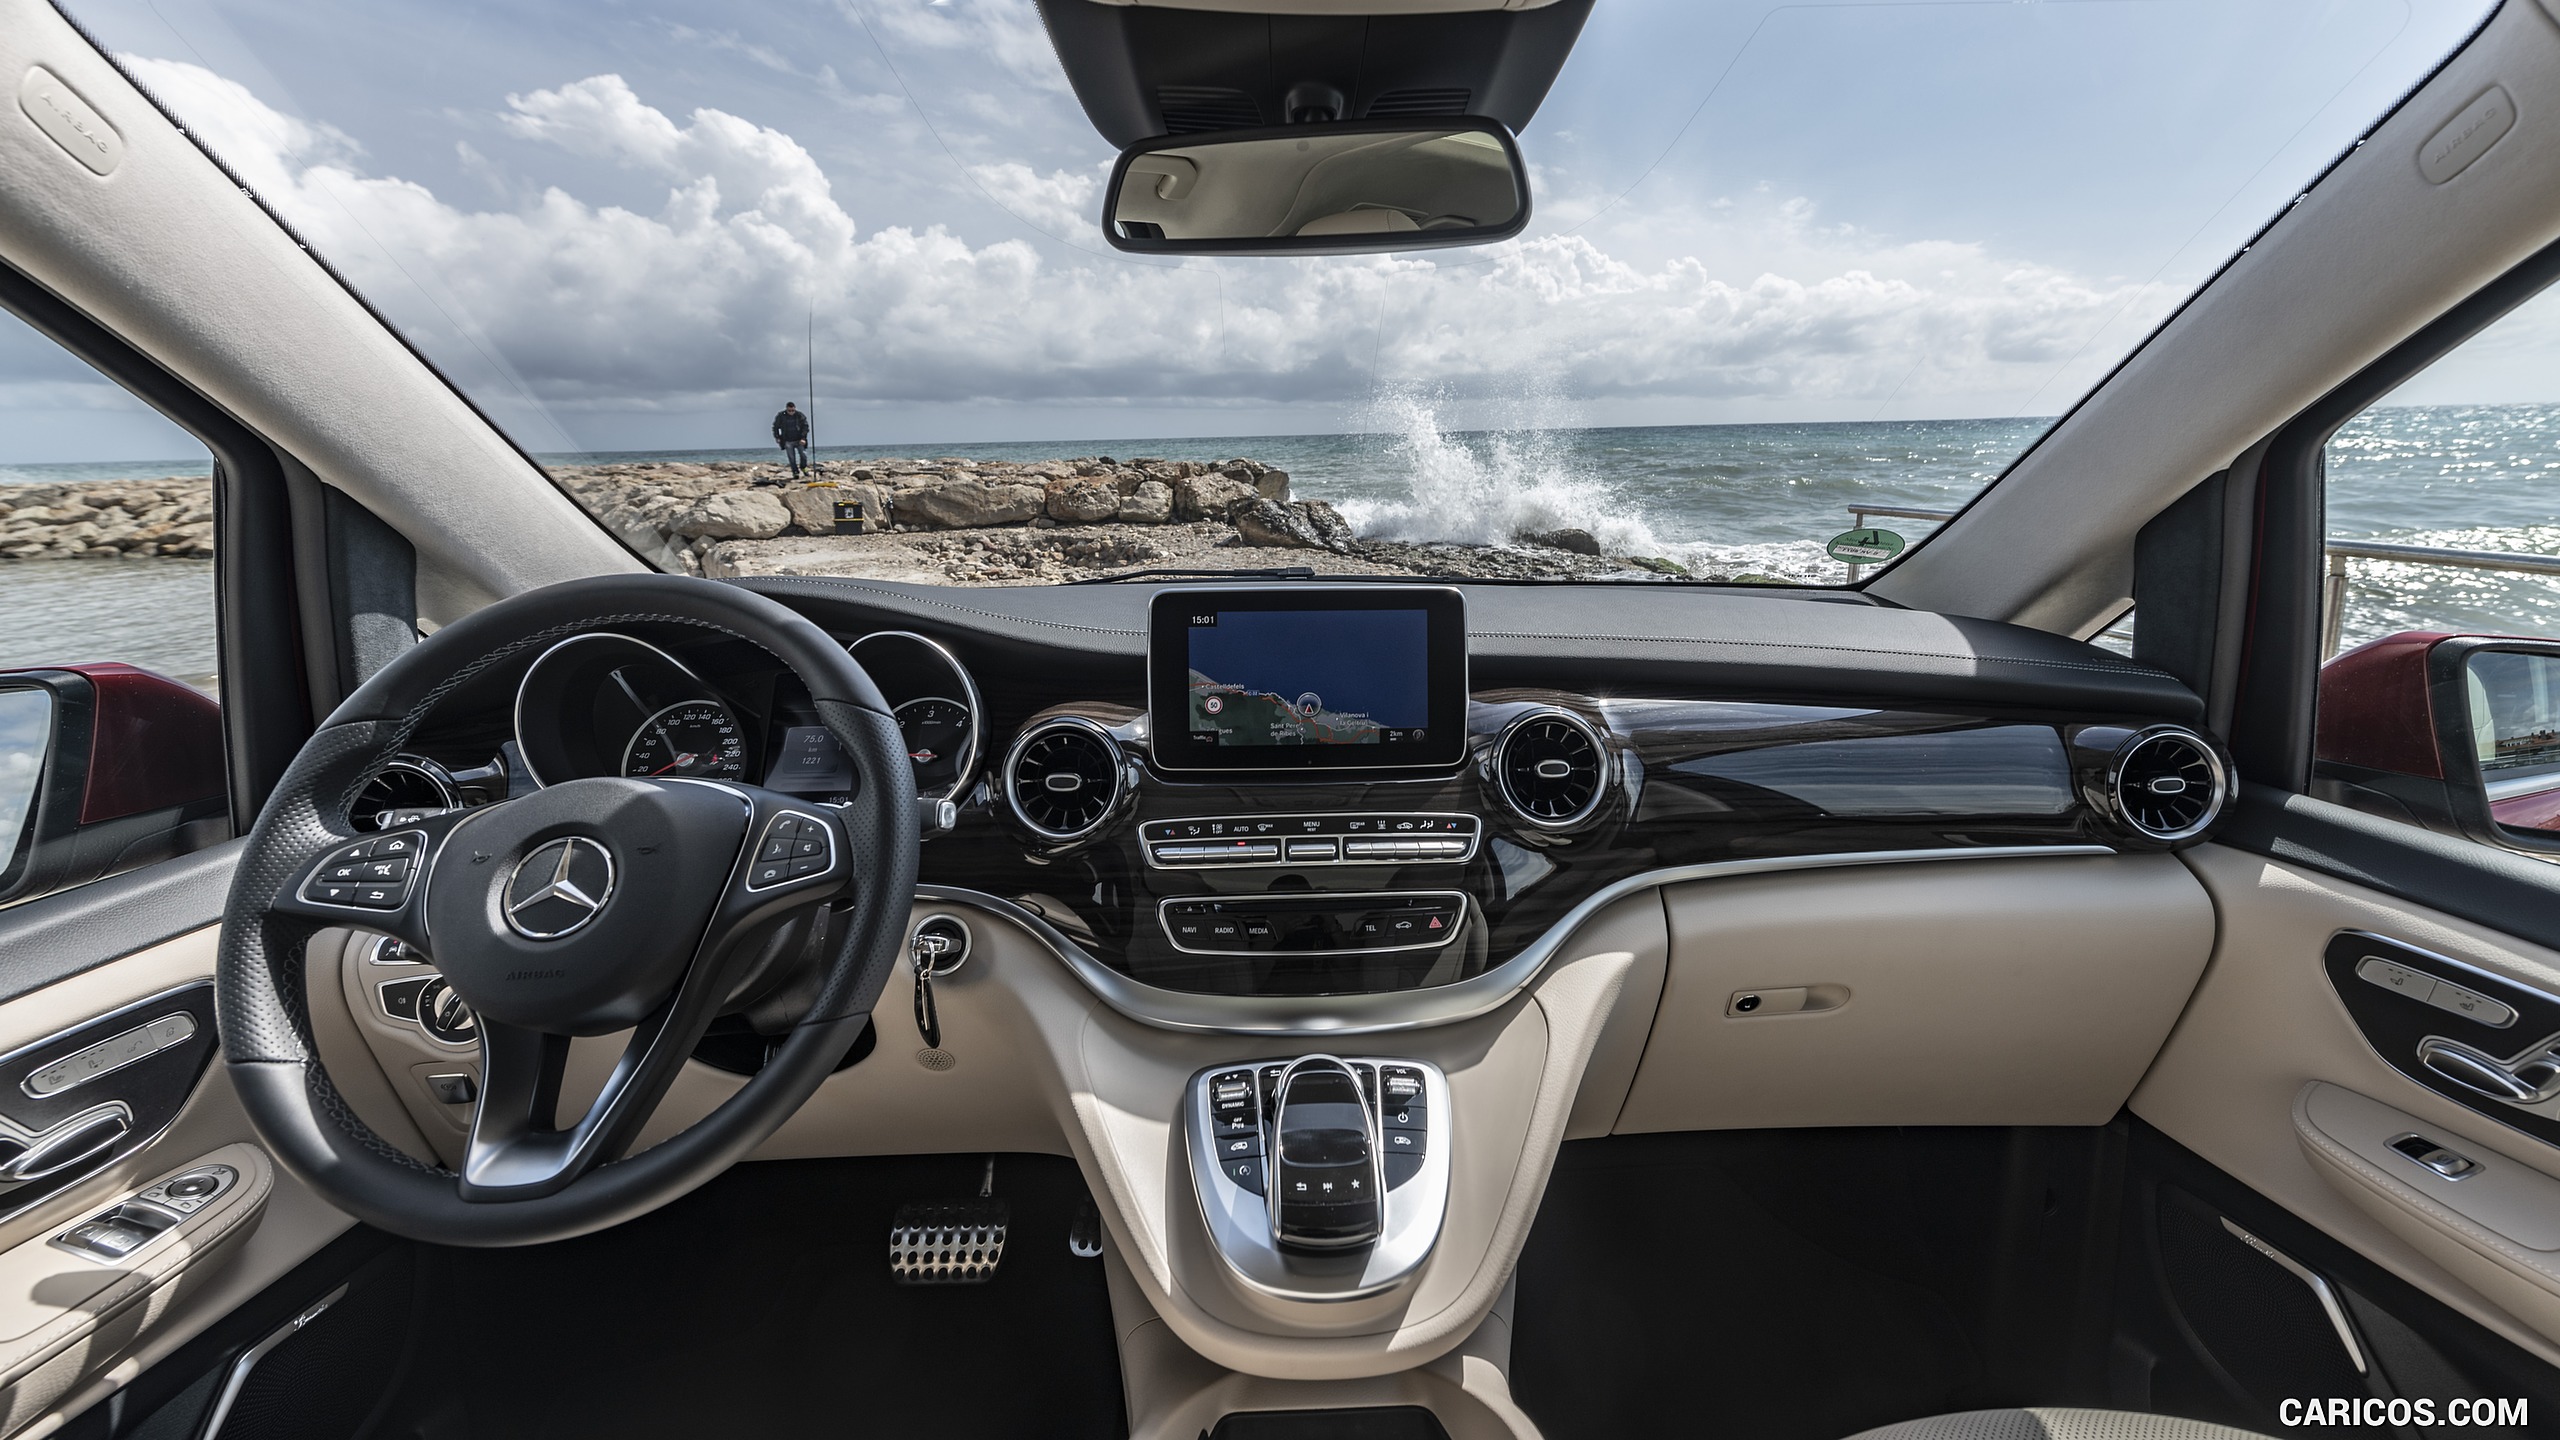 2019 Mercedes-Benz V-Class V300d - Interior, Cockpit, #166 of 216